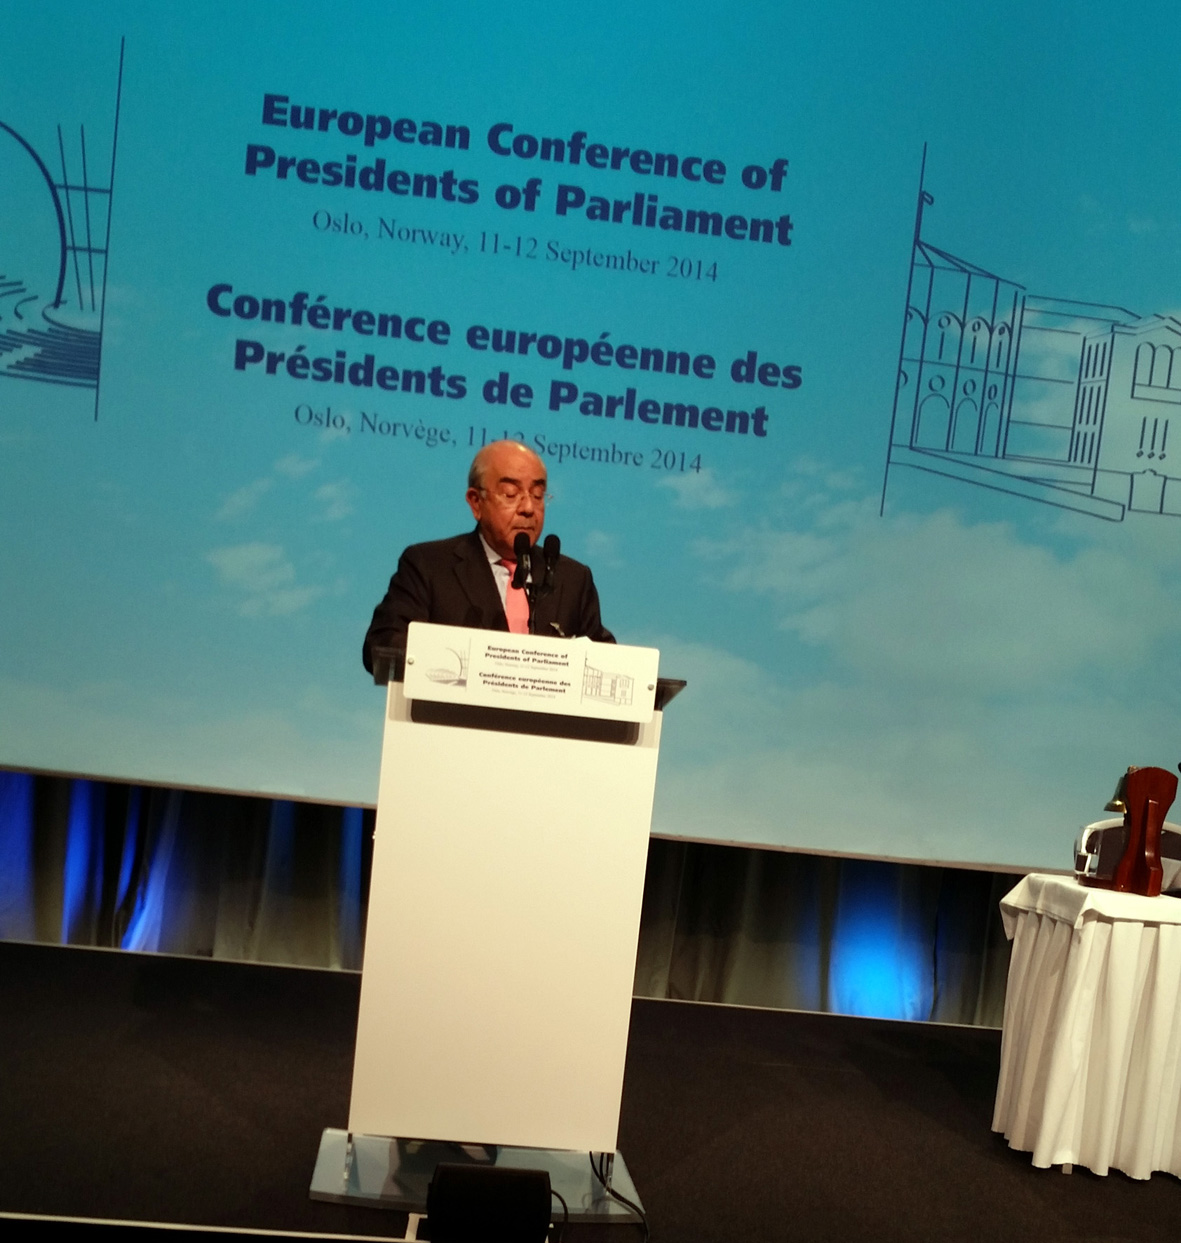 Ομιλία του Προέδρου της Βουλής στην Ευρωπαϊκή Διάσκεψη Προέδρων Κοινοβουλίων - Οσλο 11-12/9/2014